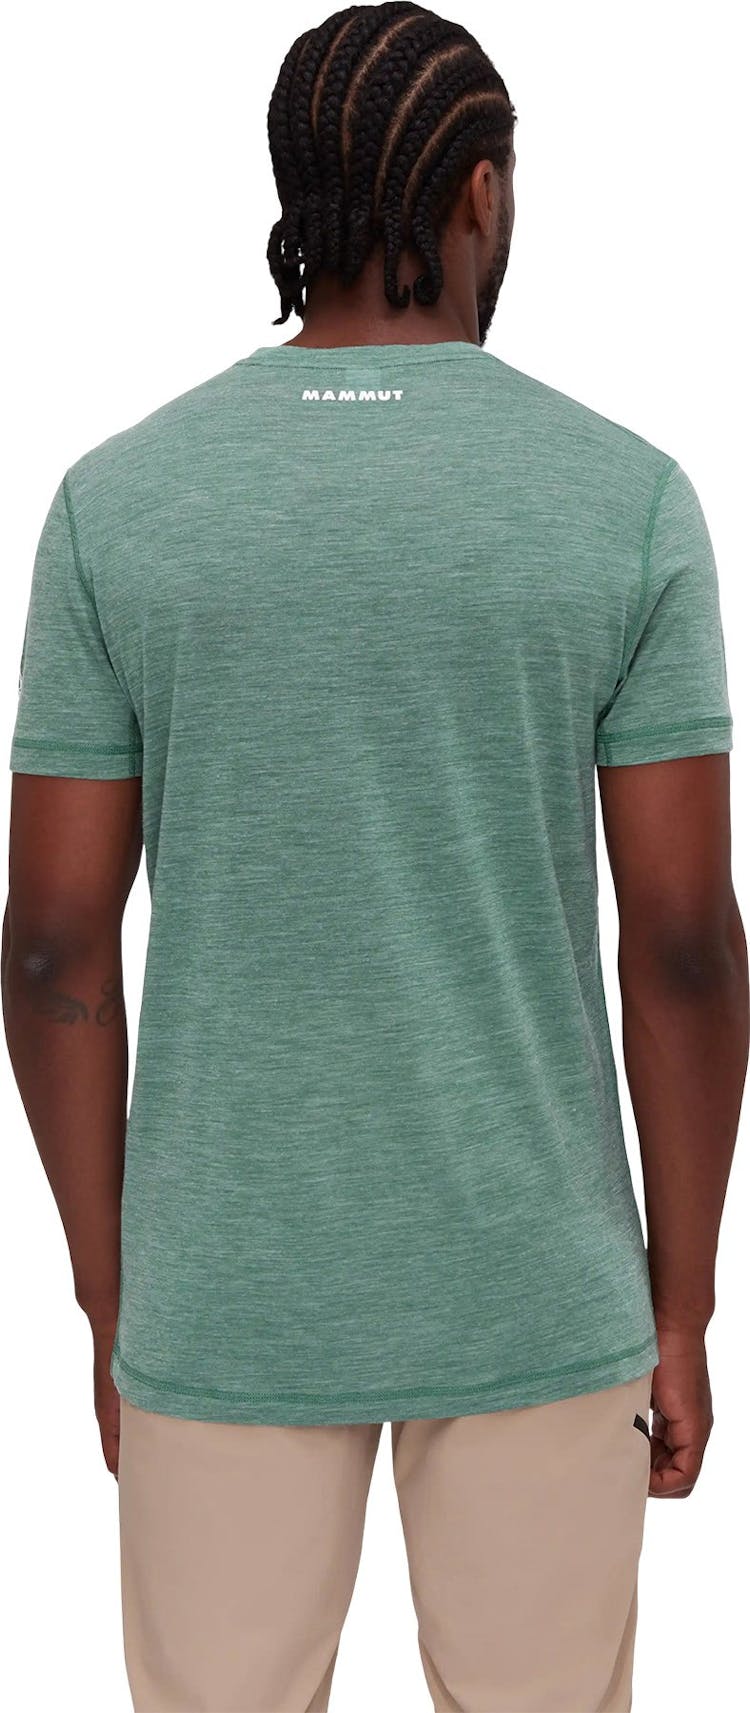 Numéro de l'image de la galerie de produits 2 pour le produit T-shirt couche de base Tree Wool - Homme